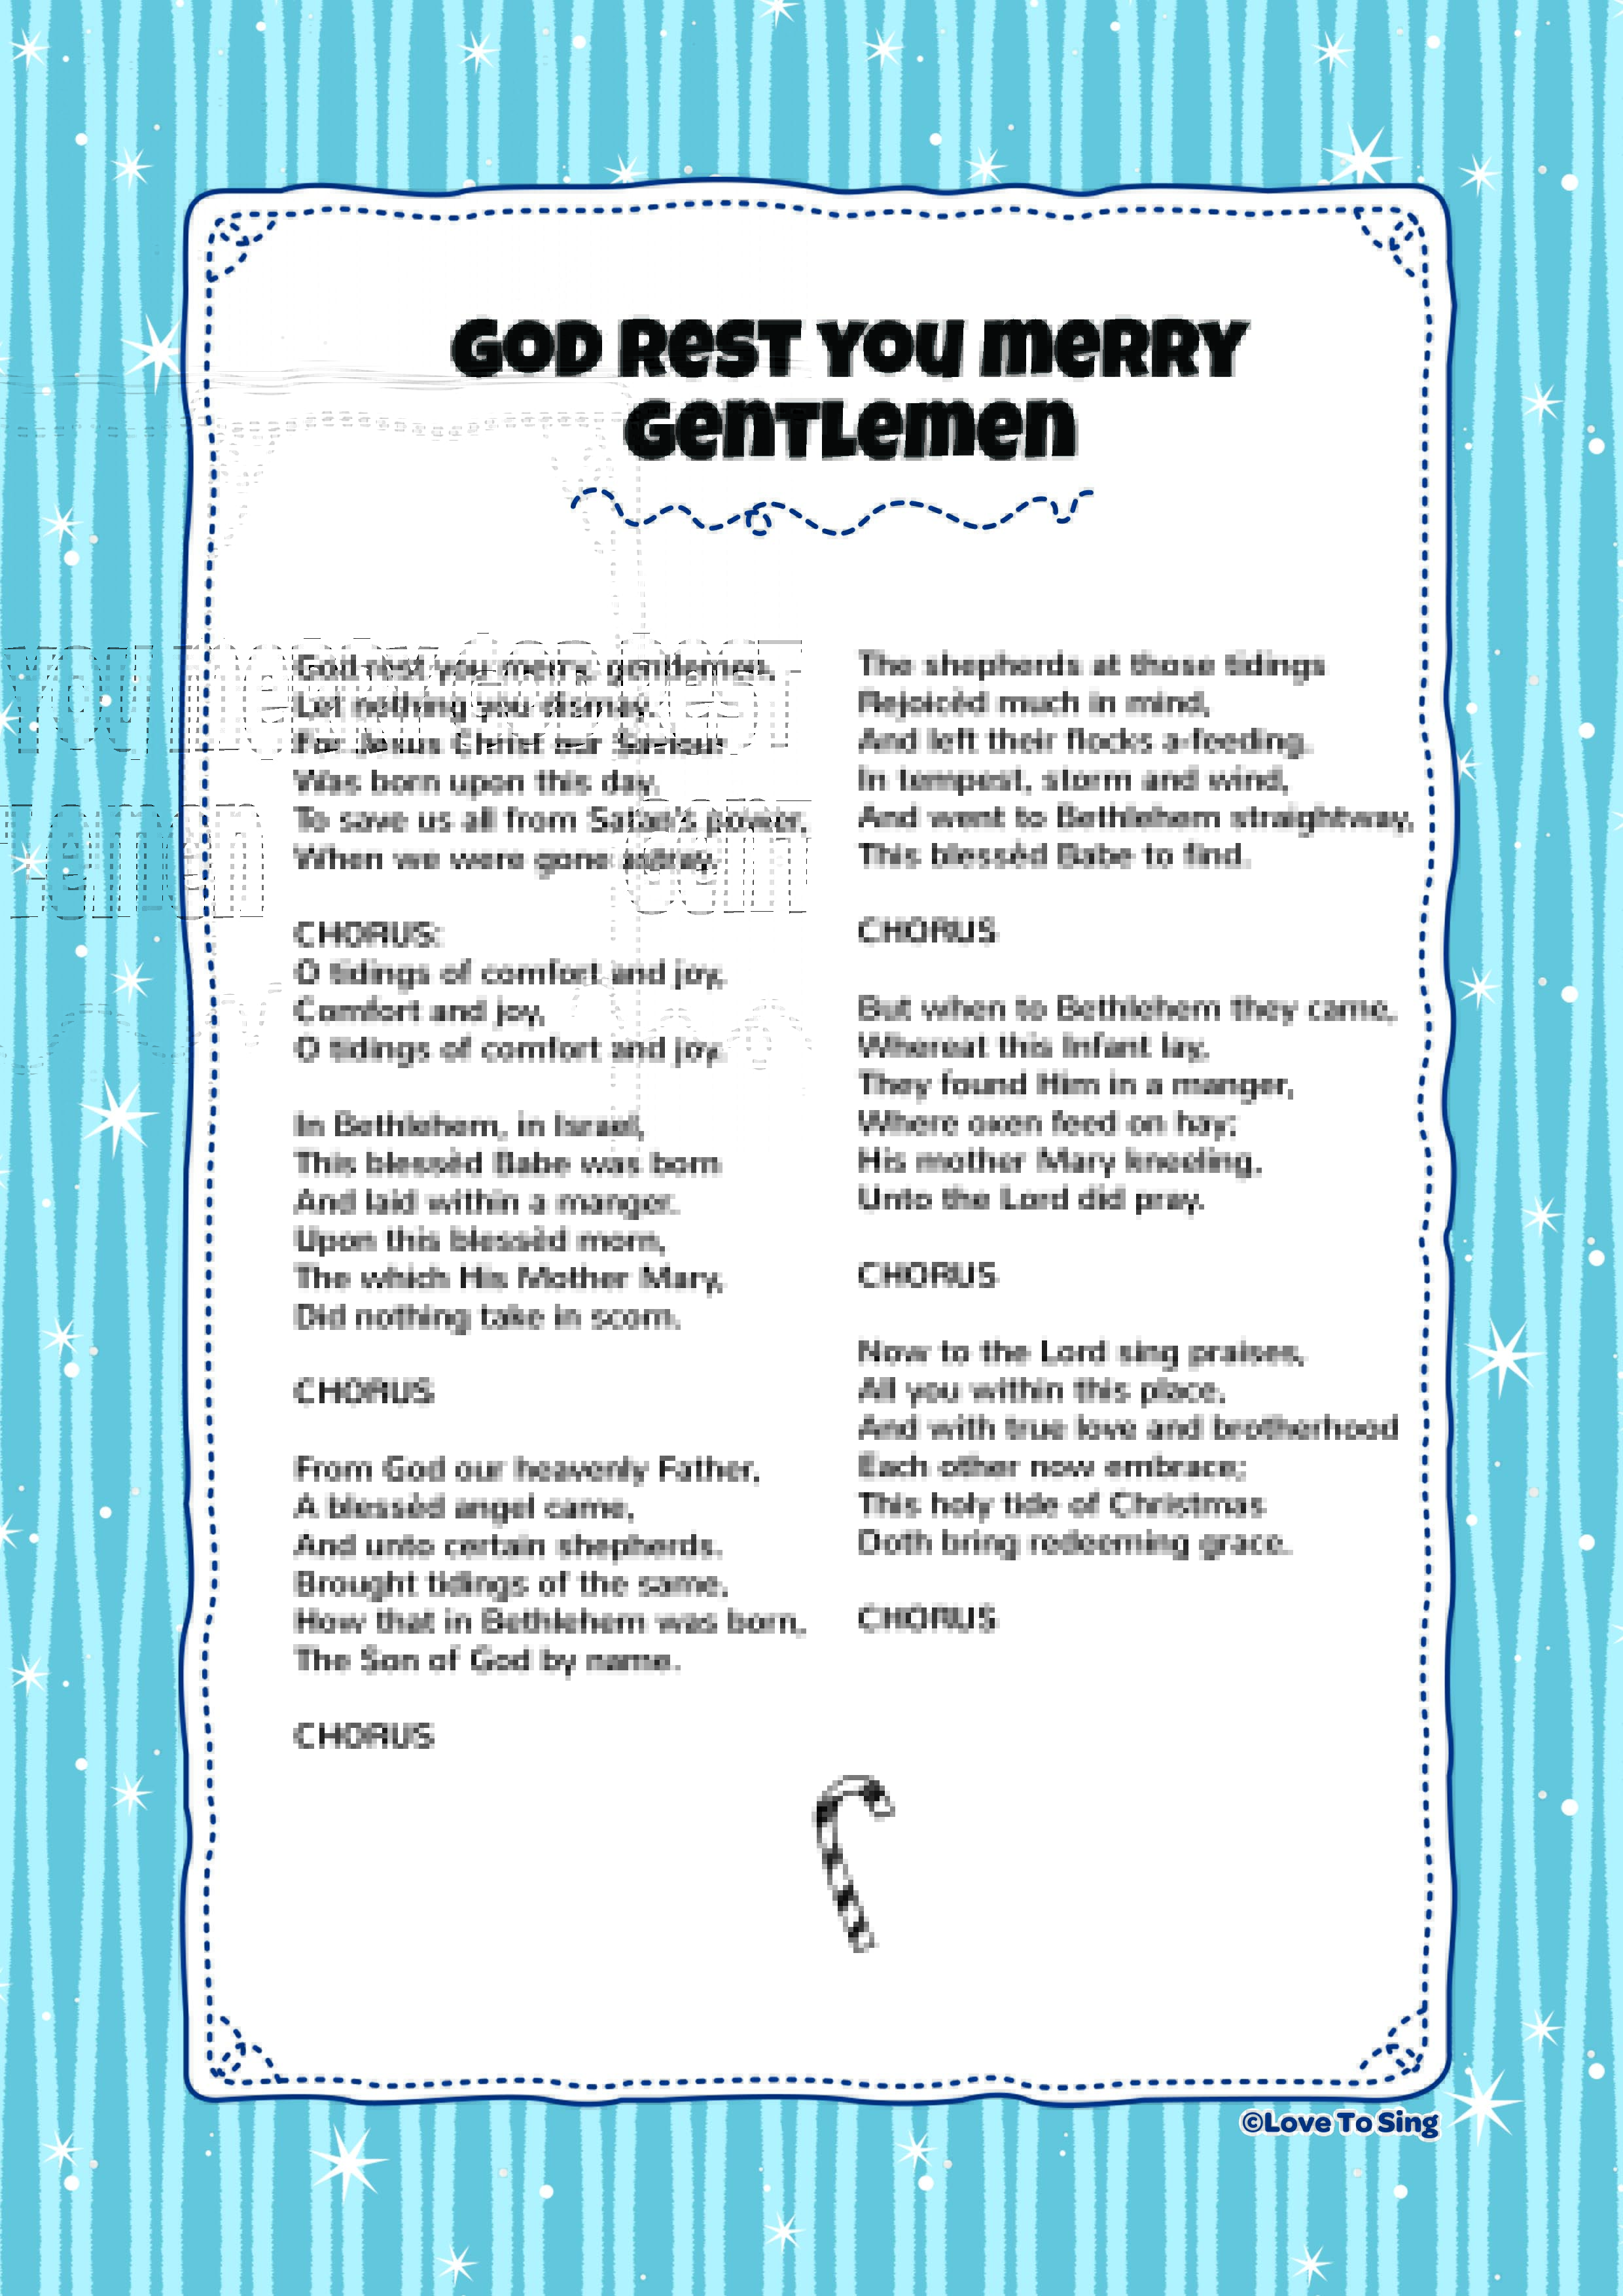 God Rest You Merry, Gentlemen | Kids Video Song with FREE Lyrics & Activities!